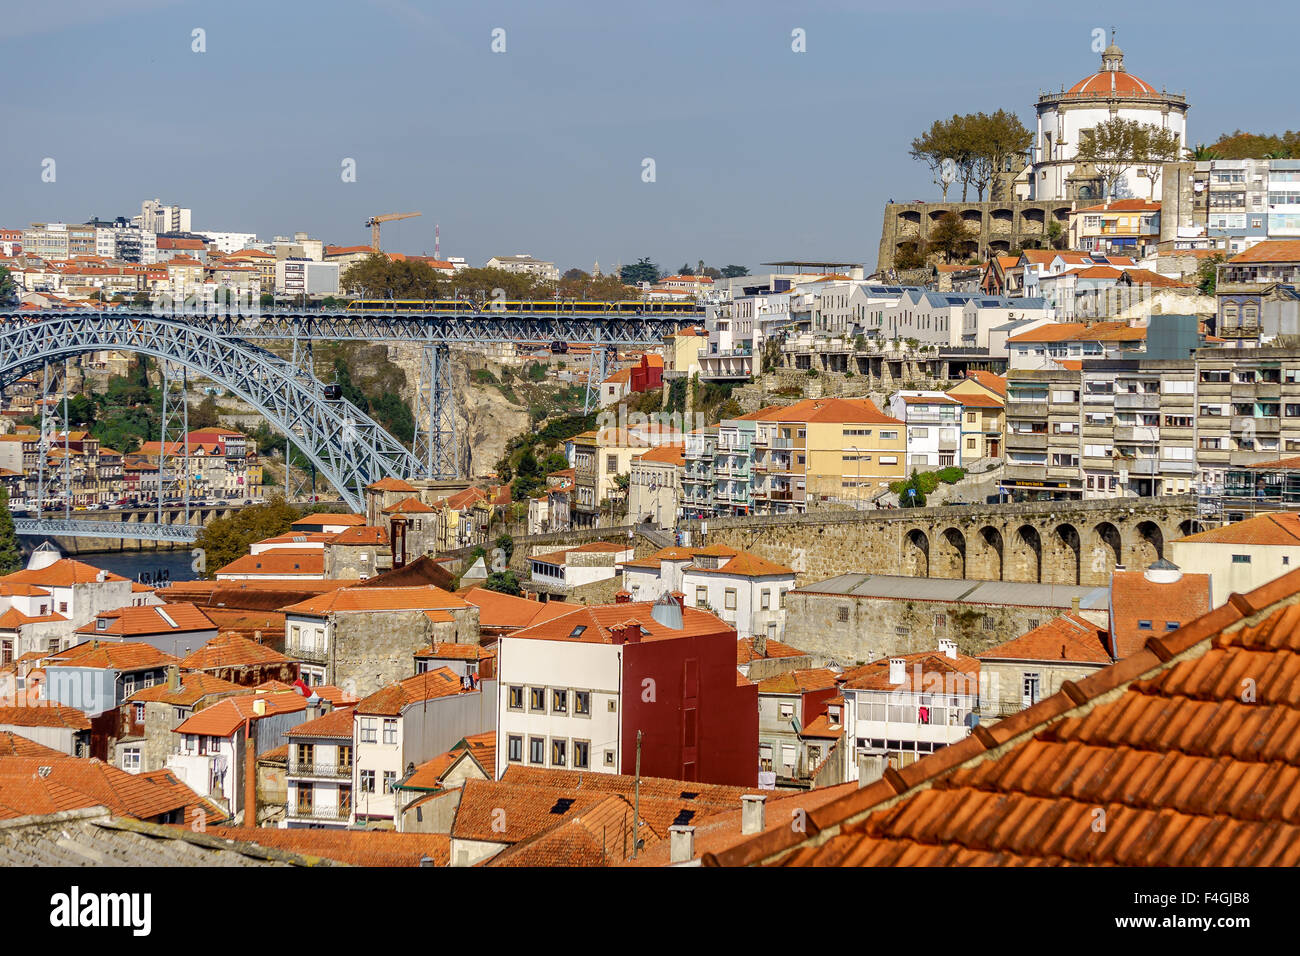 Avis de Gaia, ville de port wine lodges, et Ponte Luis je pont. Octobre, 2015. Porto, Portugal. Banque D'Images